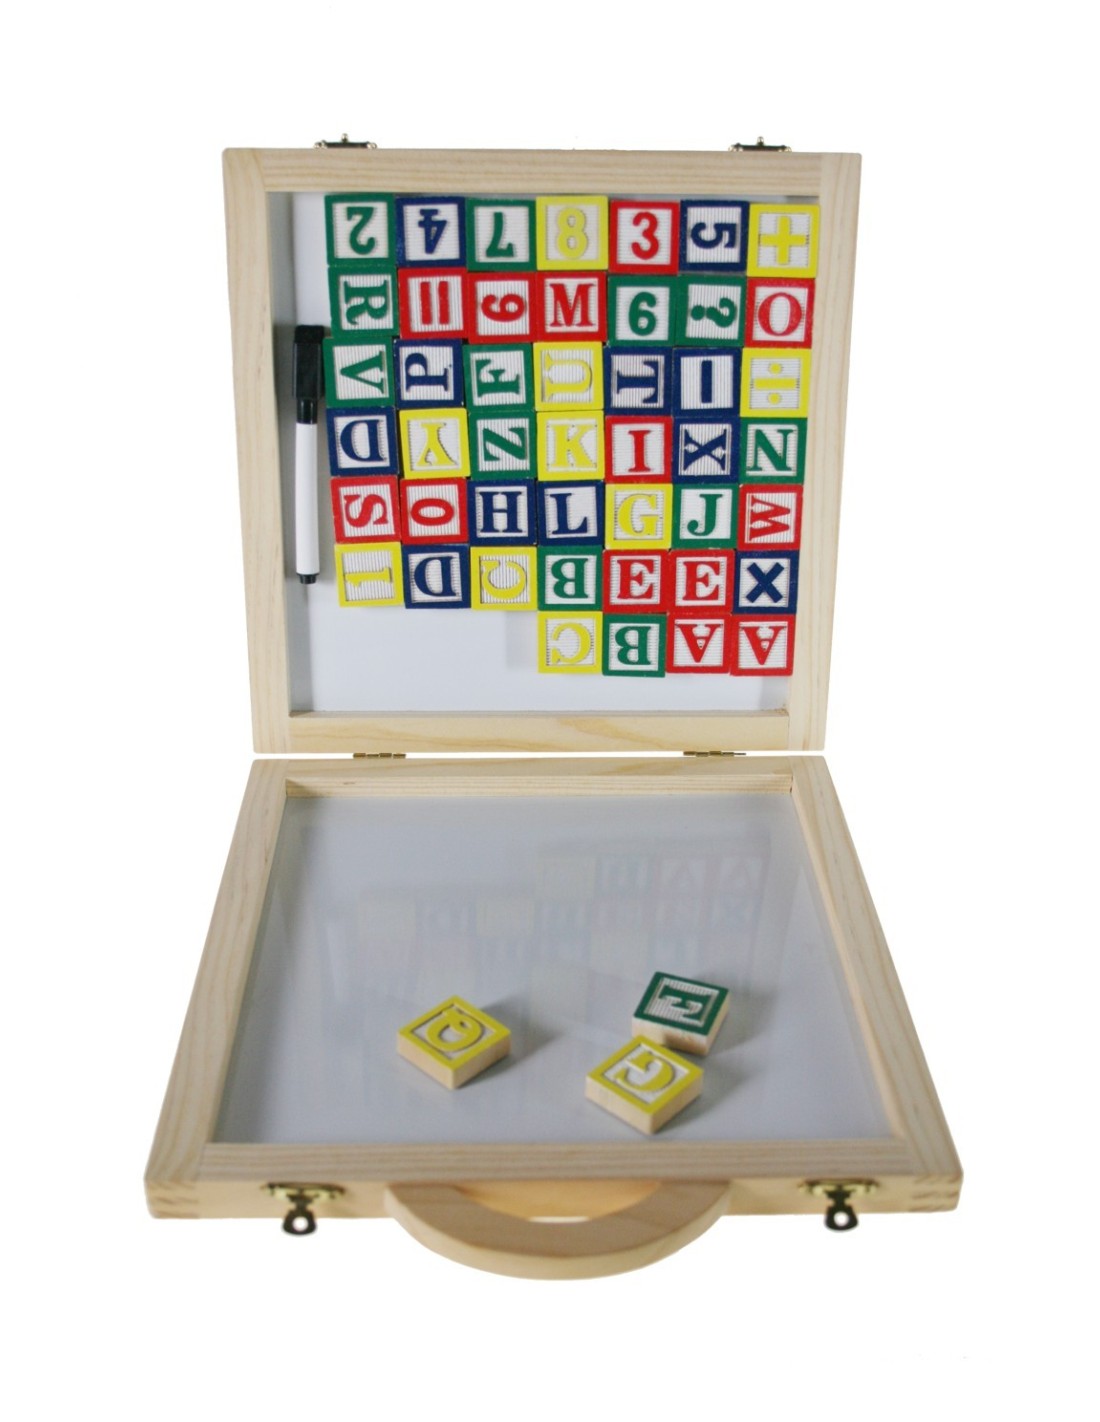 Juego de letras y números de madera con maleta para transporte juego de motricidad fina para niño niña.